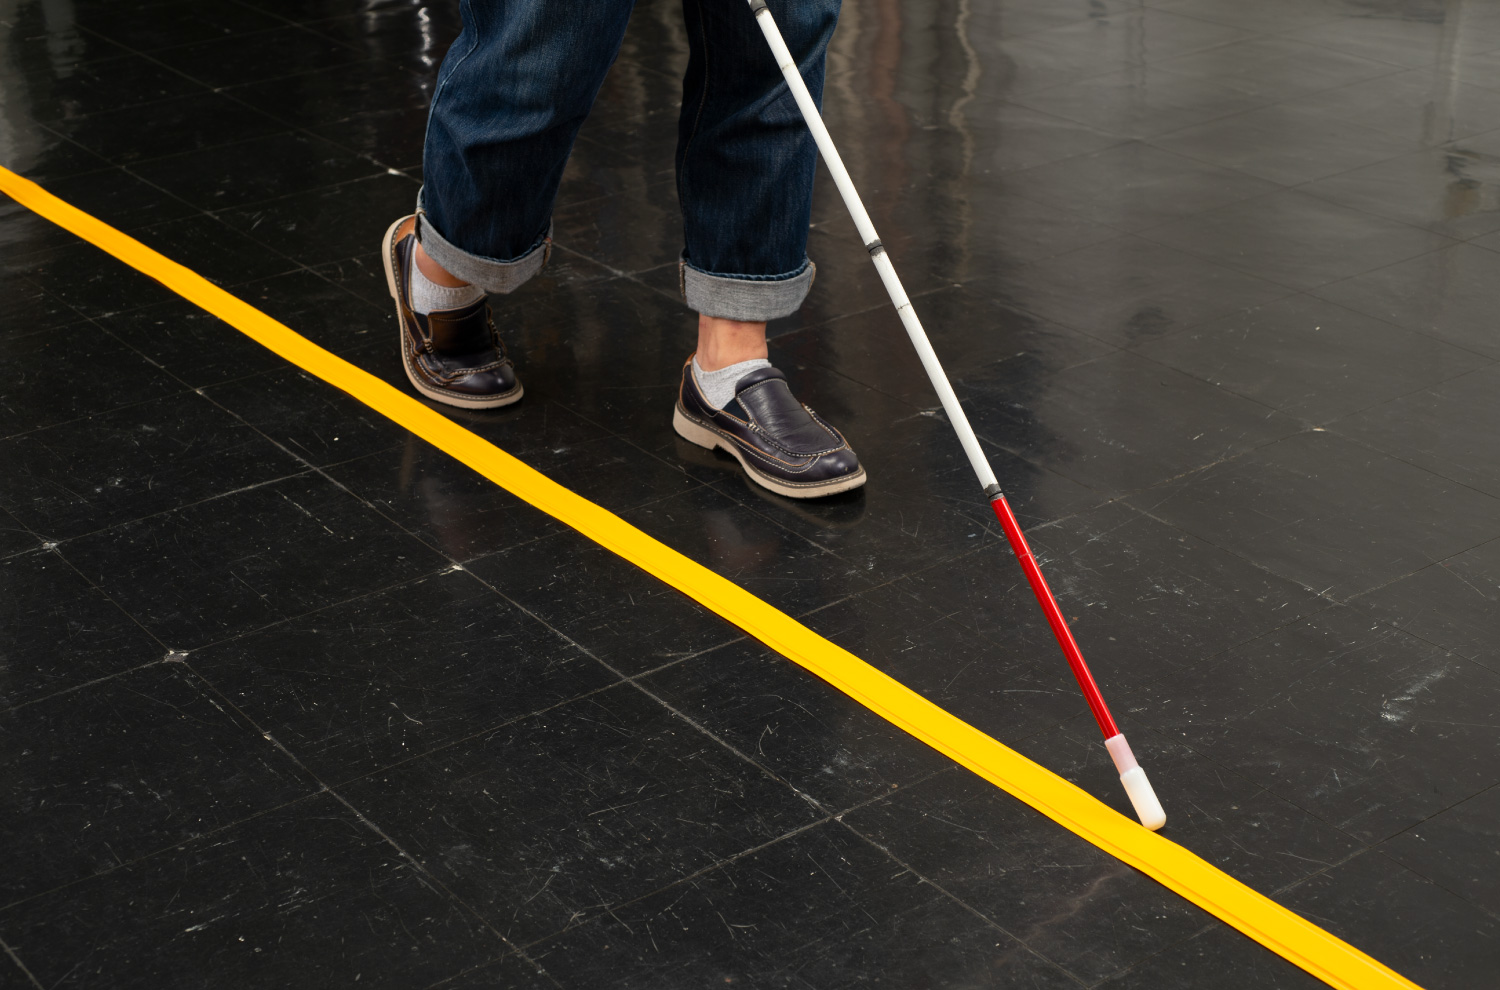 床に真っ直ぐに引かれたココテープをガイドに、白杖を持った人が歩いている。